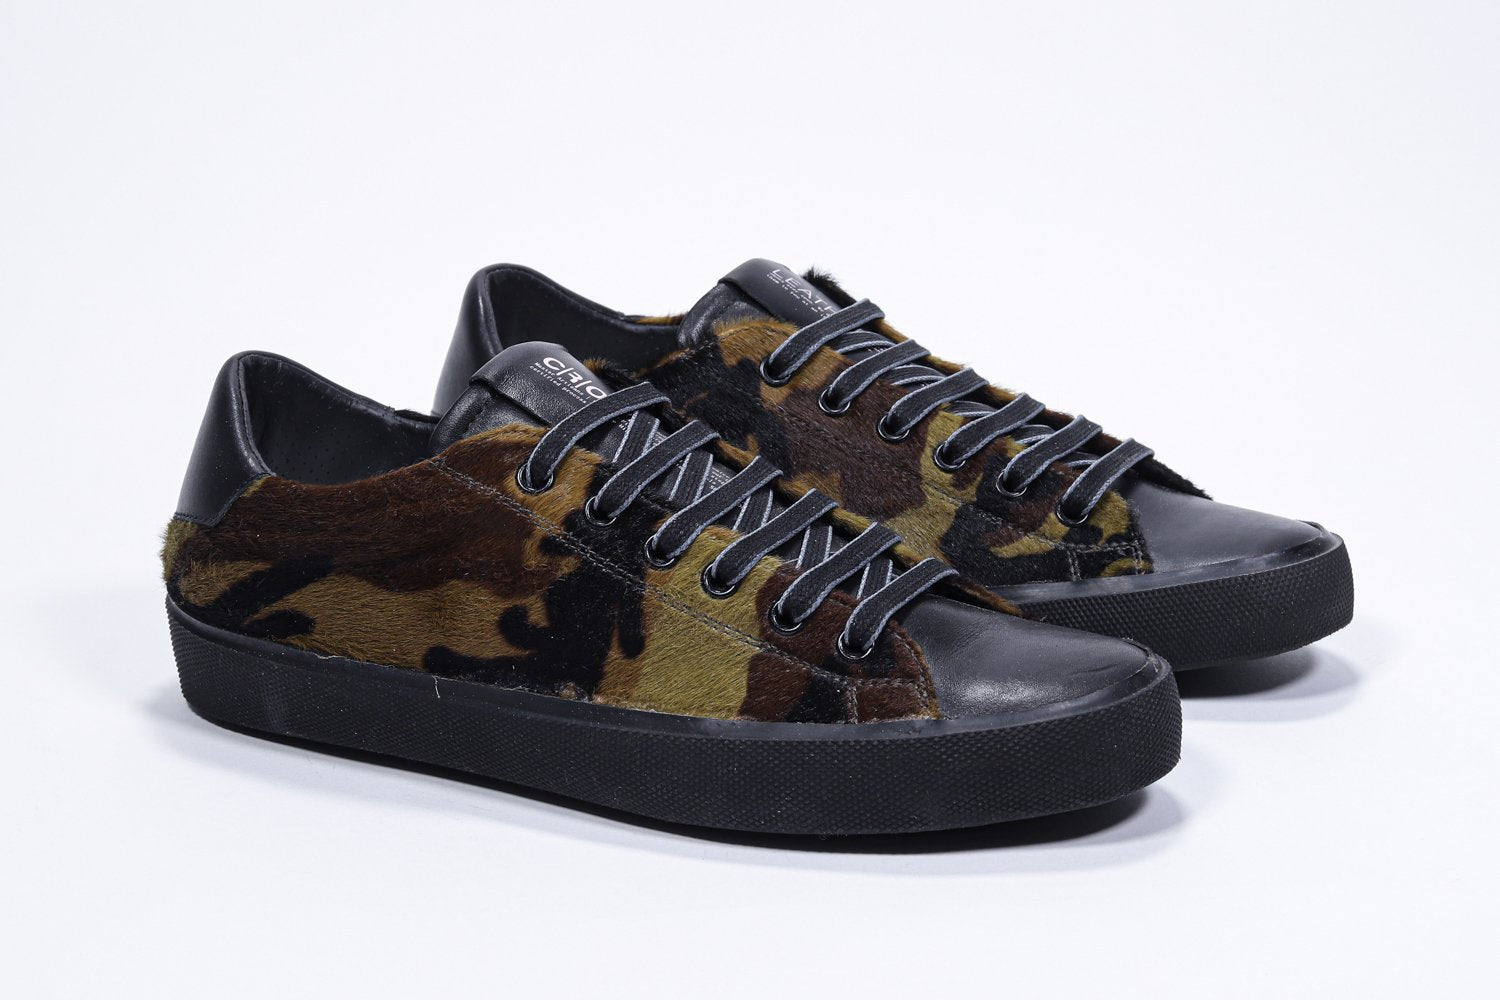 Vue de trois quarts de l'avant de la chaussure à imprimé camouflage sneaker. Tige en cuir pleine fleur et semelle en caoutchouc noir.